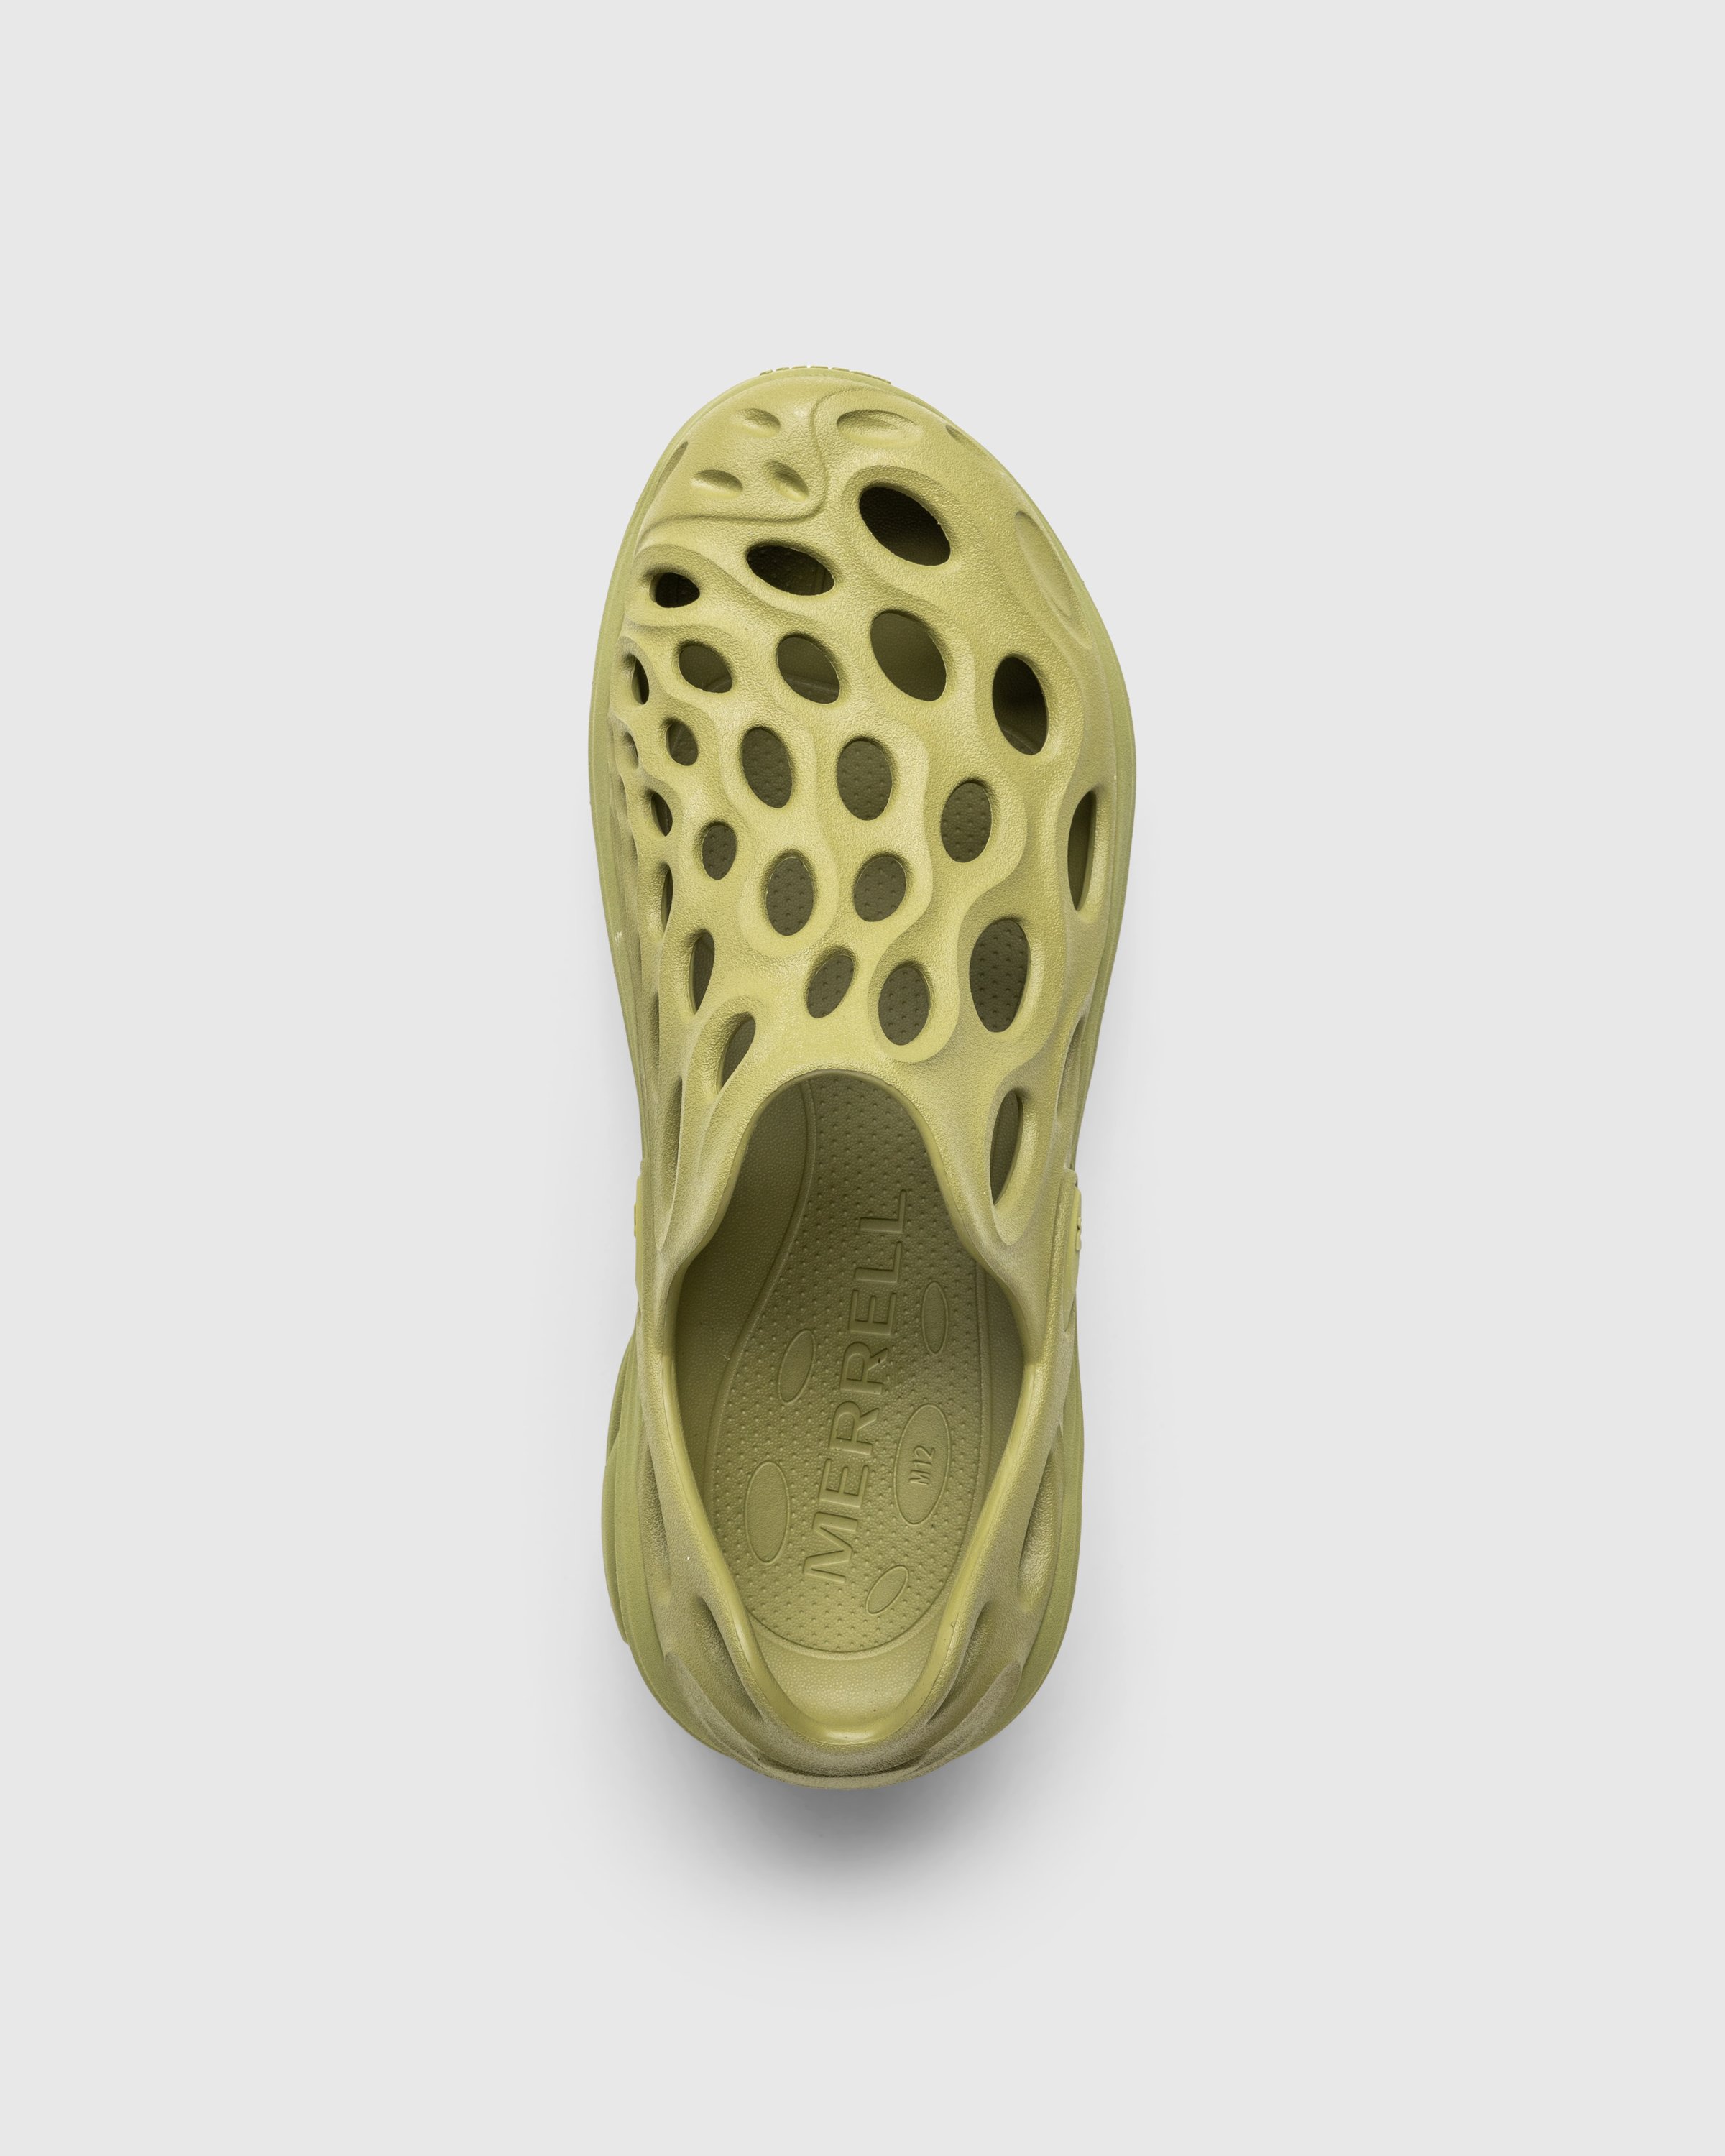 Merrell - HYDRO NEXT GEN MOC SE/TRIPLE MOSSTONE - Footwear - Green - Image 5